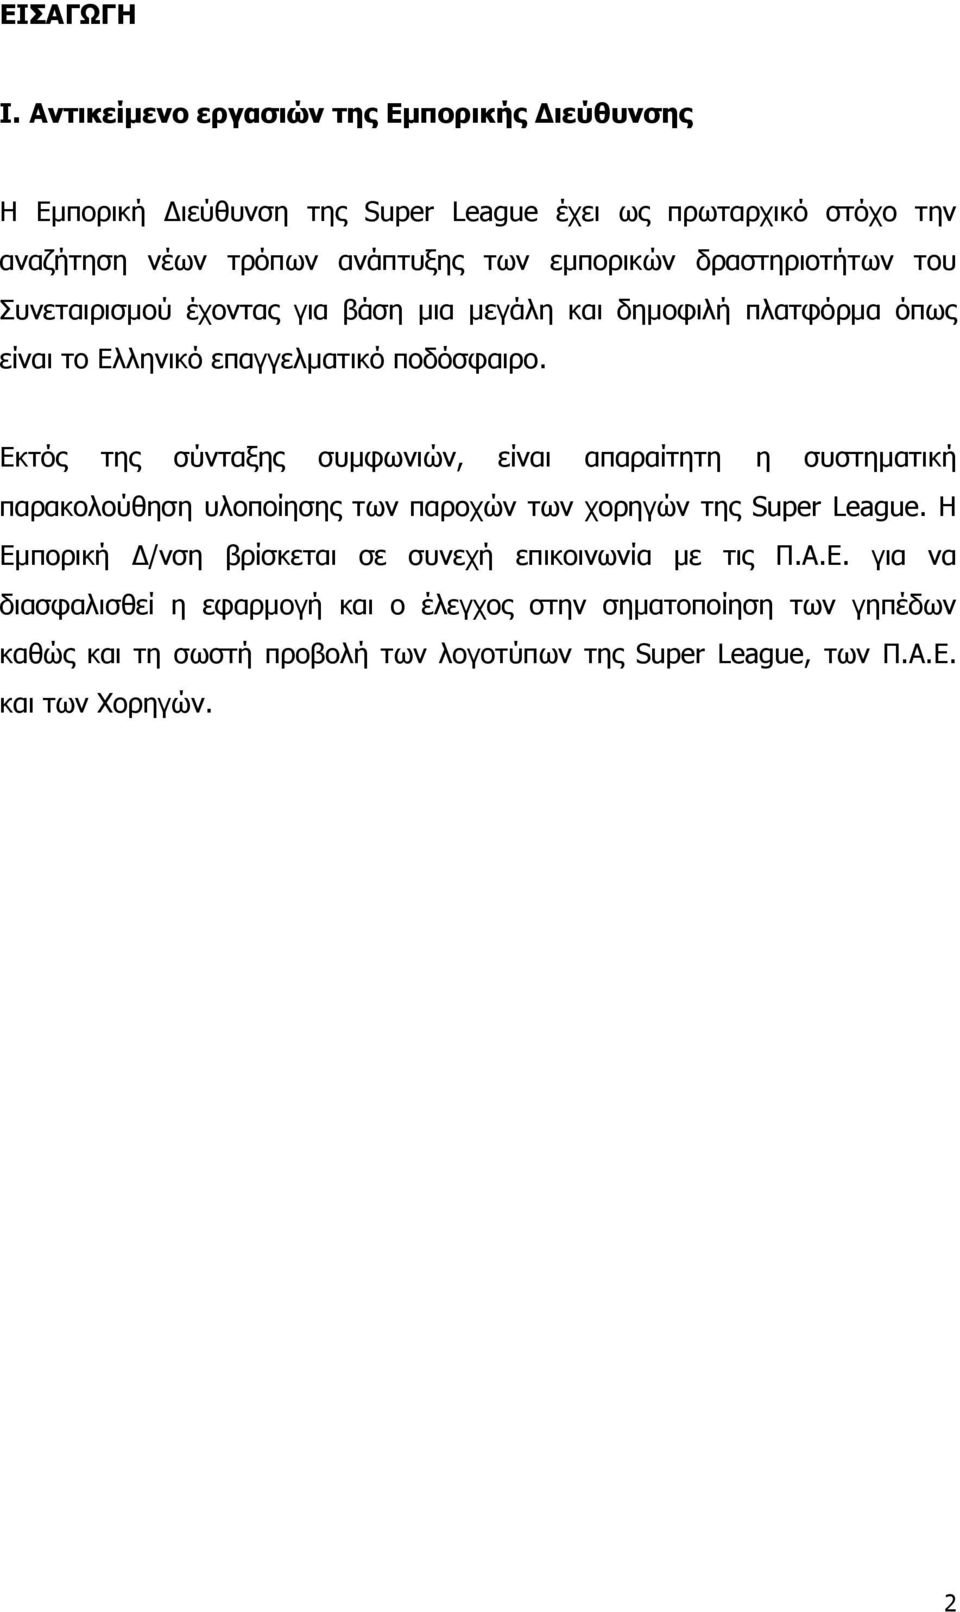 δραστηριοτήτων του Συνεταιρισµού έχοντας για βάση µια µεγάλη και δηµοφιλή πλατφόρµα όπως είναι το Ελληνικό επαγγελµατικό ποδόσφαιρο.